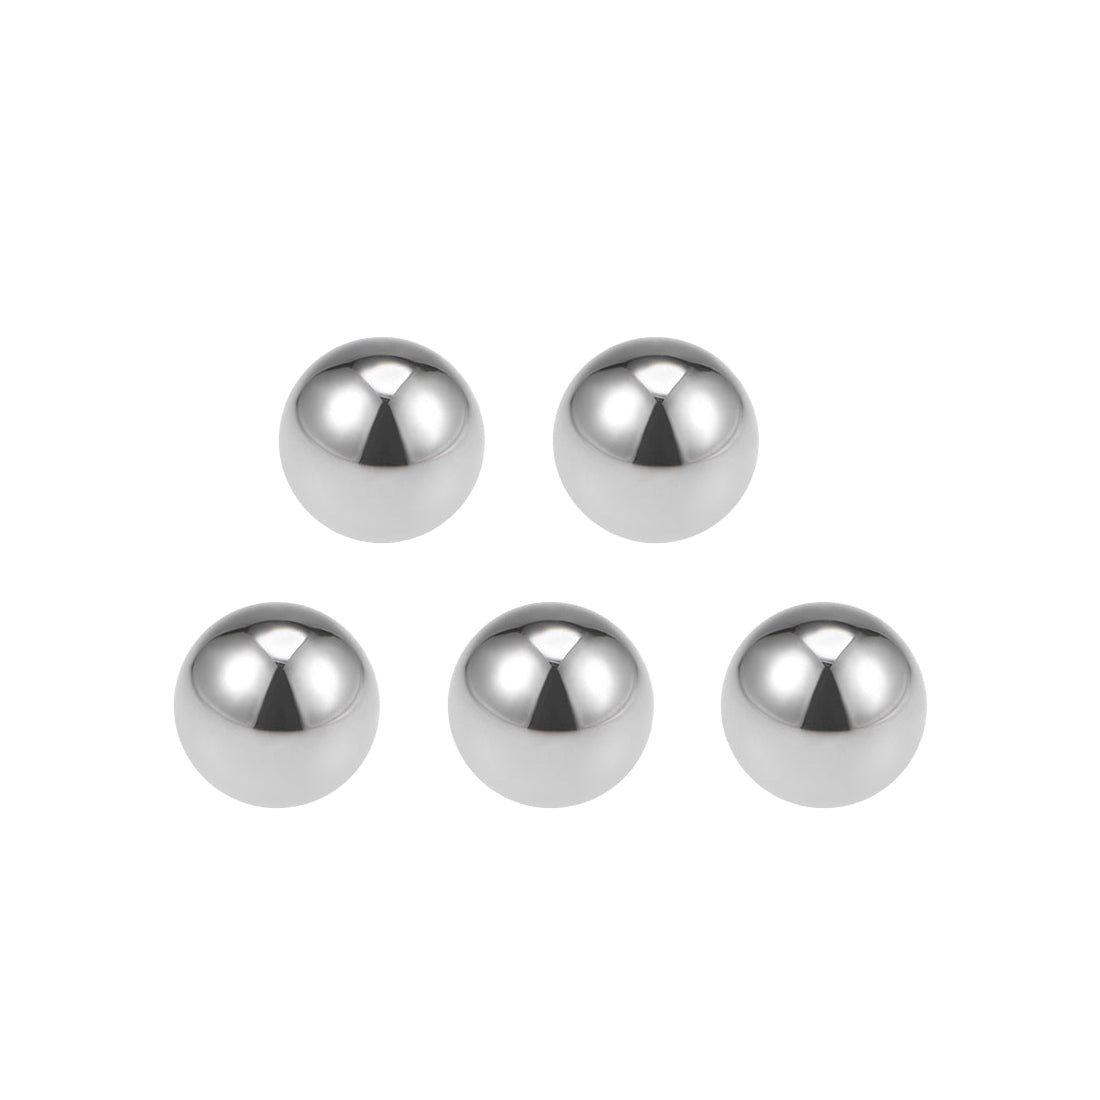 Uxcell Uxcell 1/4" Bearing Balls Tungsten Carbide G25 Precision Balls 10pcs